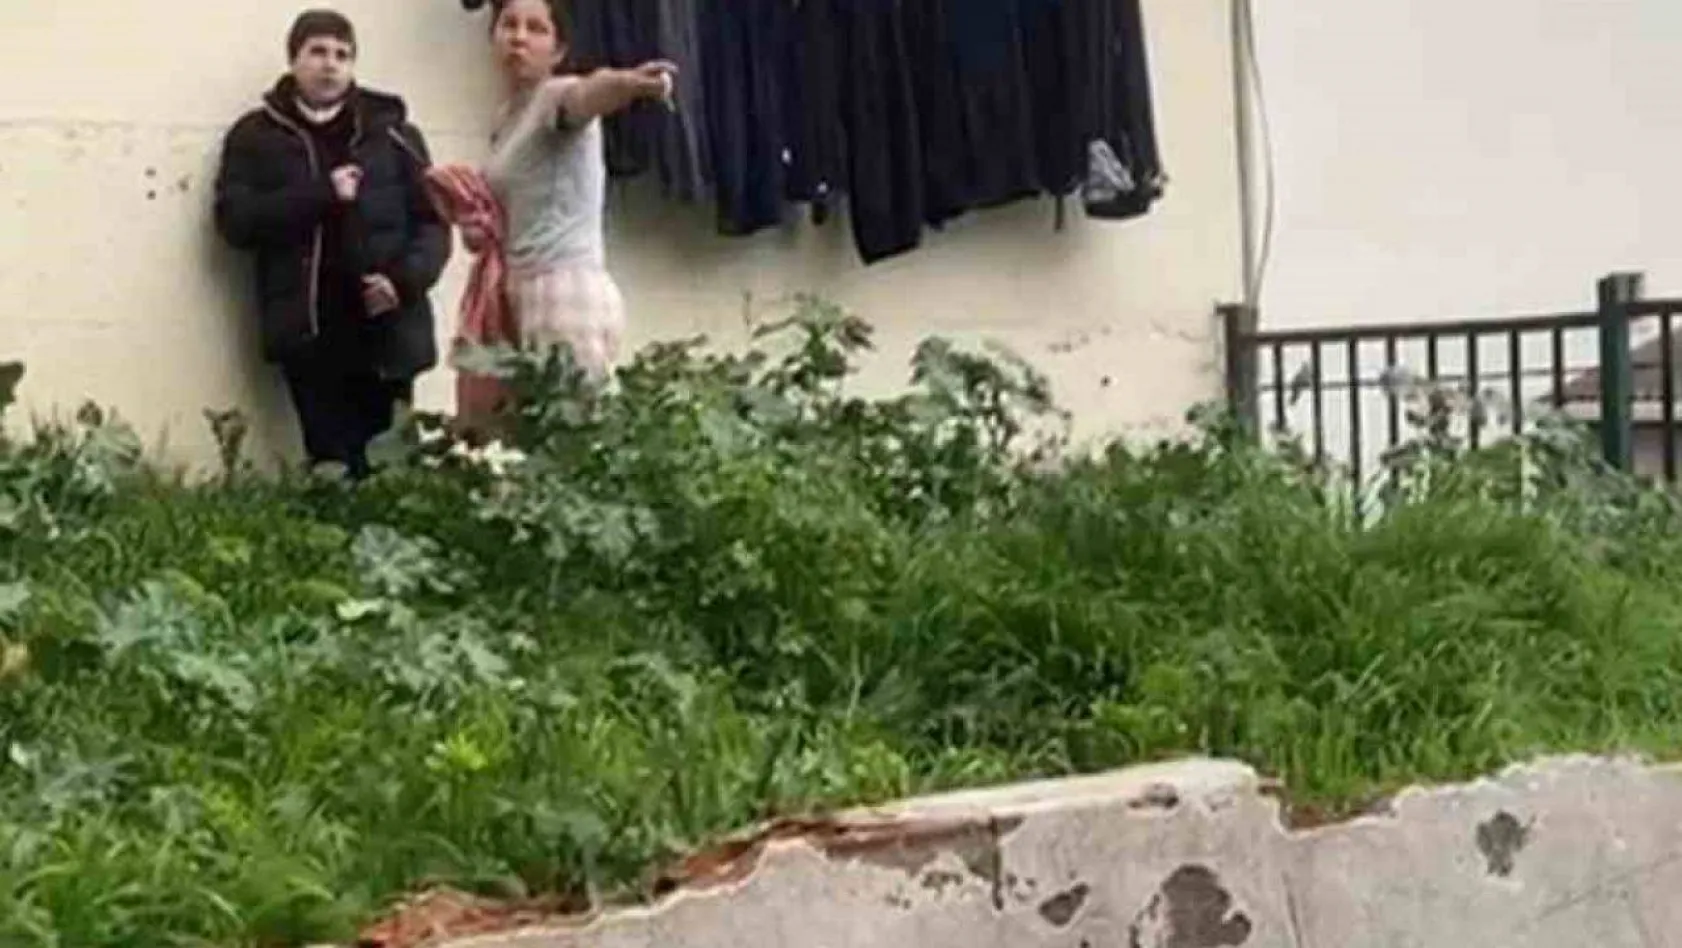 İstanbul'da parkta çocuğa şişle saldırı tehdidi kamerada: 'Senin beynini patlatırım'